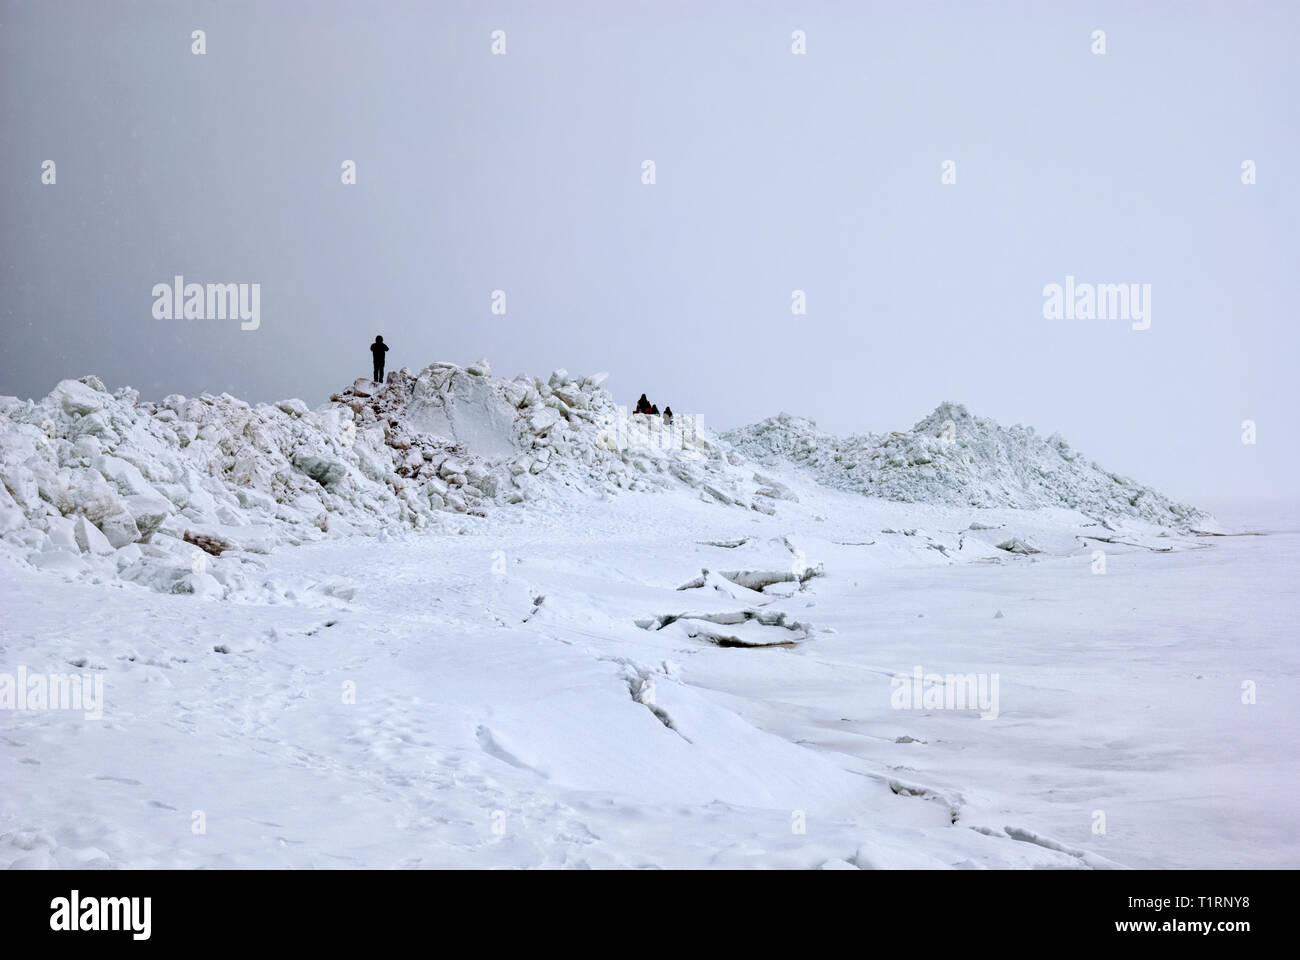 Menschen auf dem Bergrücken (eisschollen) am Golf von Finnland am Strand von zelenogorsk Stadt (Stadtteil von St. Petersburg) im März. Russland Stockfoto